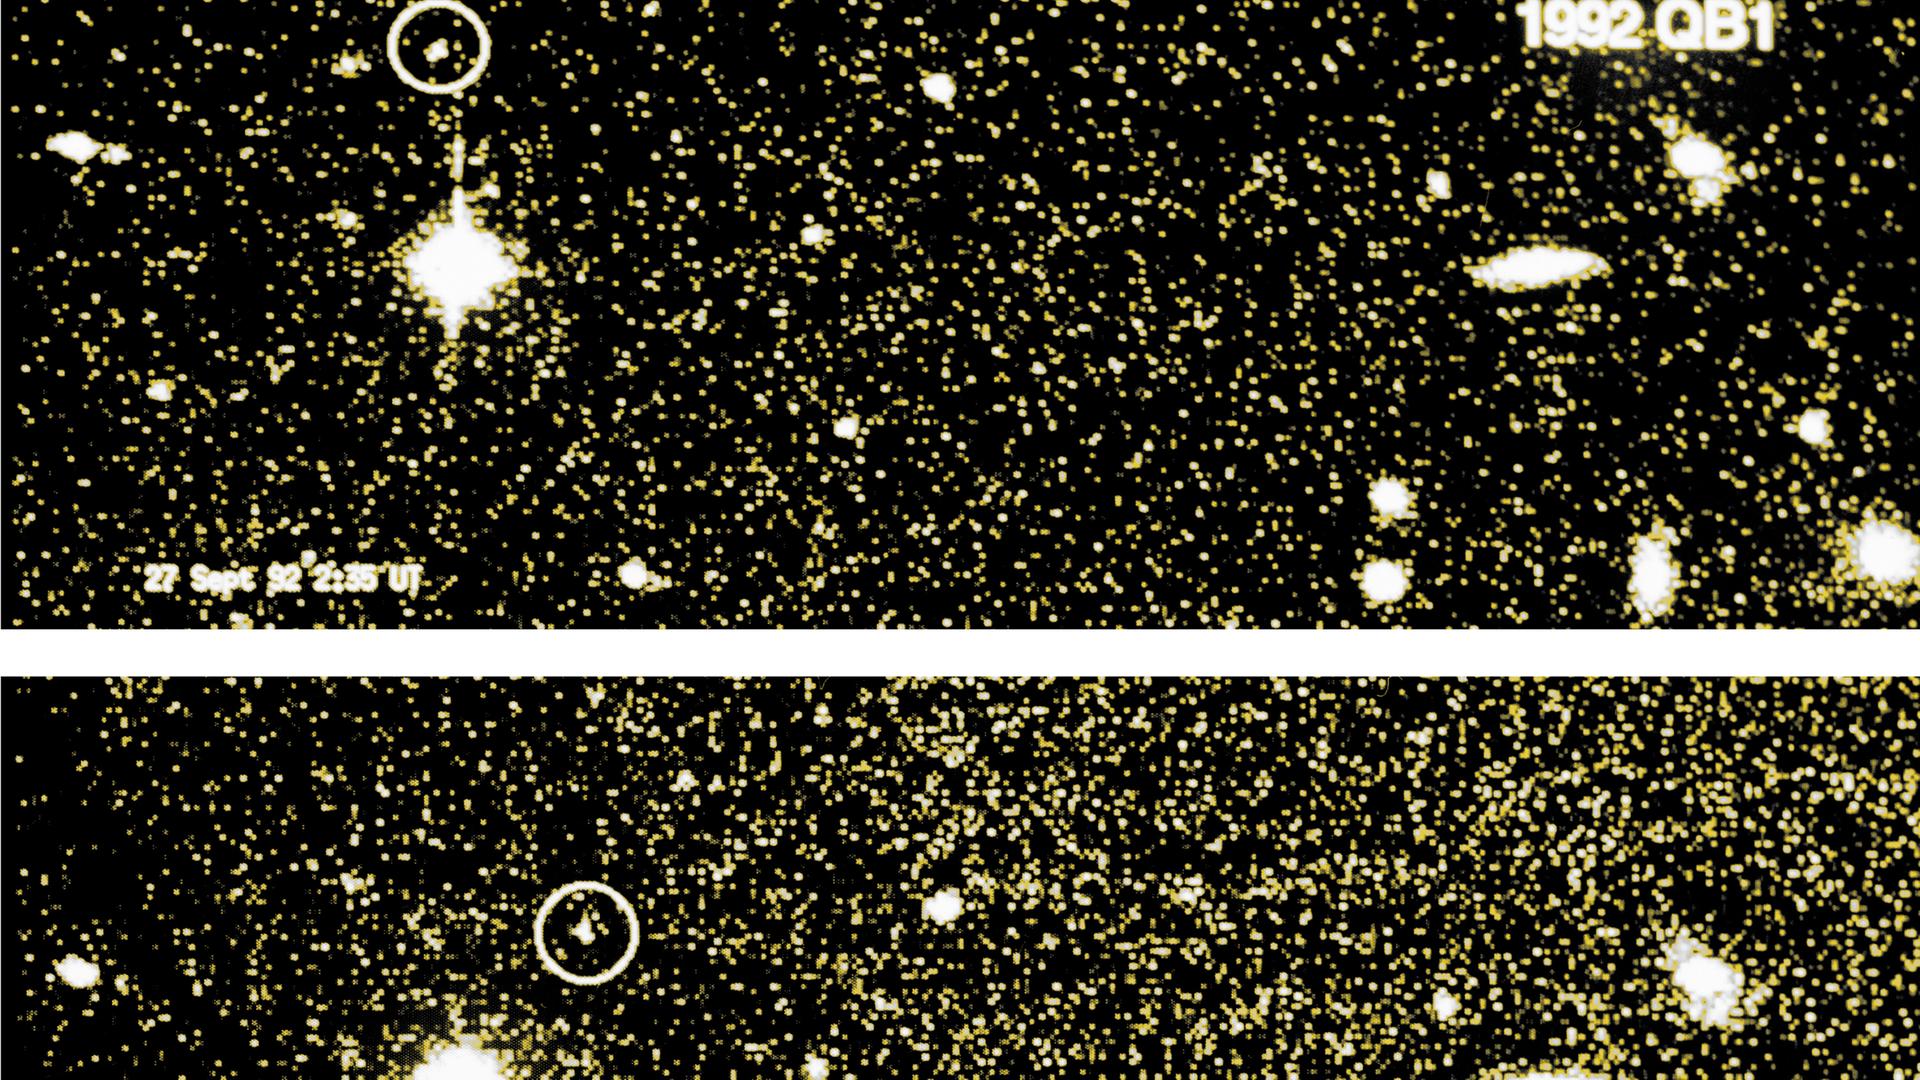 Innerhalb von vier Stunden hat sich 1992 QB1 deutlich vor dem Hintergrund der Sterne bewegt